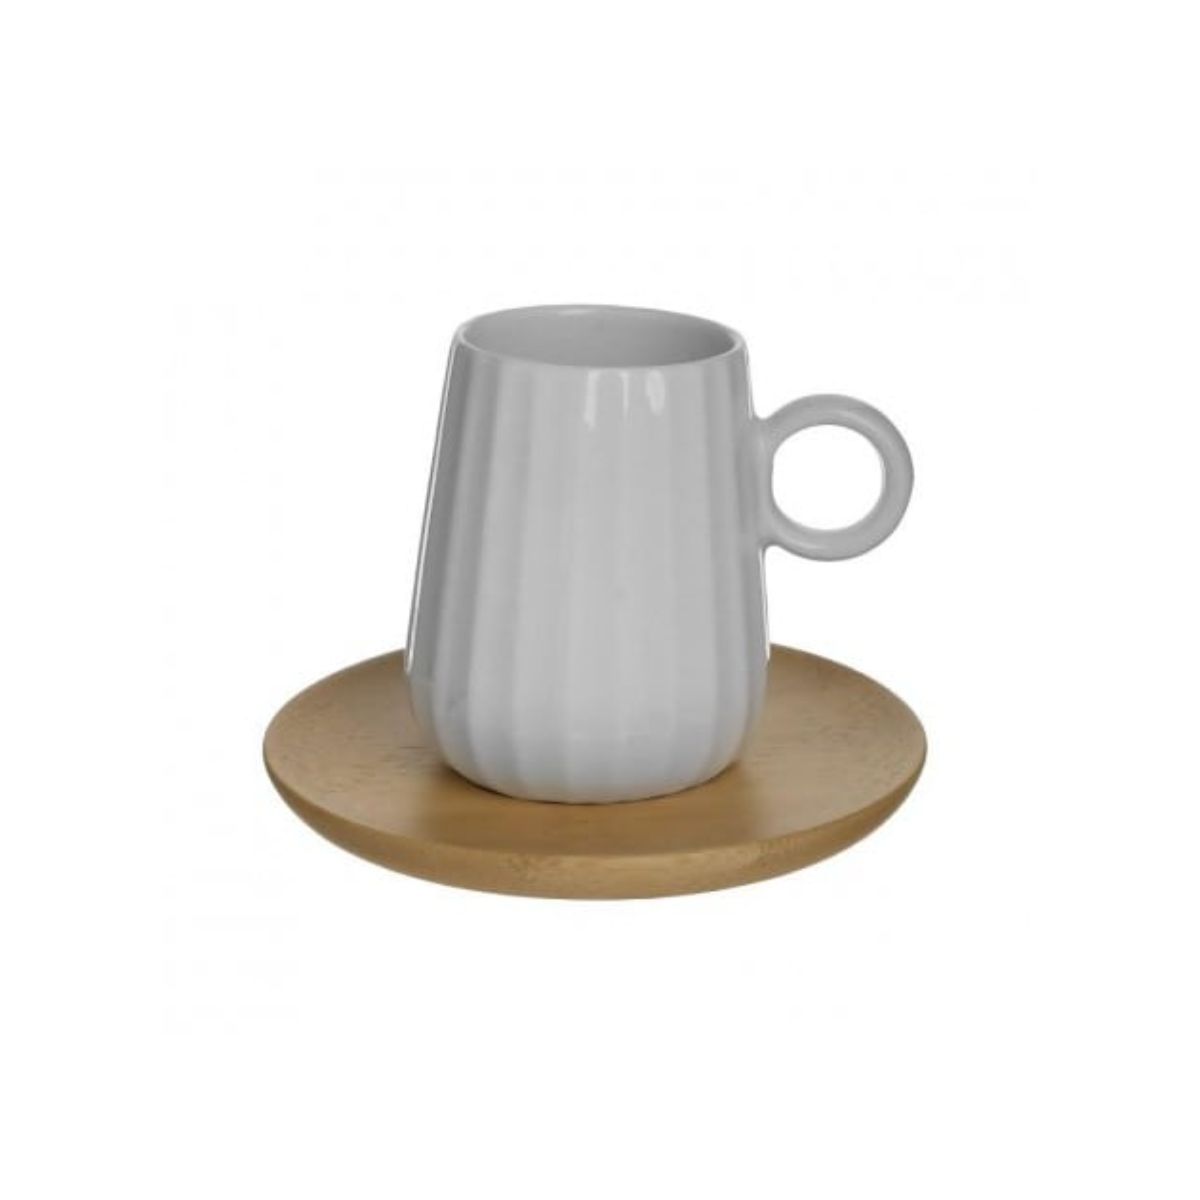 Bucatarie - Set pentru cafea, 6 cesti din portelan cu suport din bambus, 9Χ6Χ7 cm., hectarul.ro